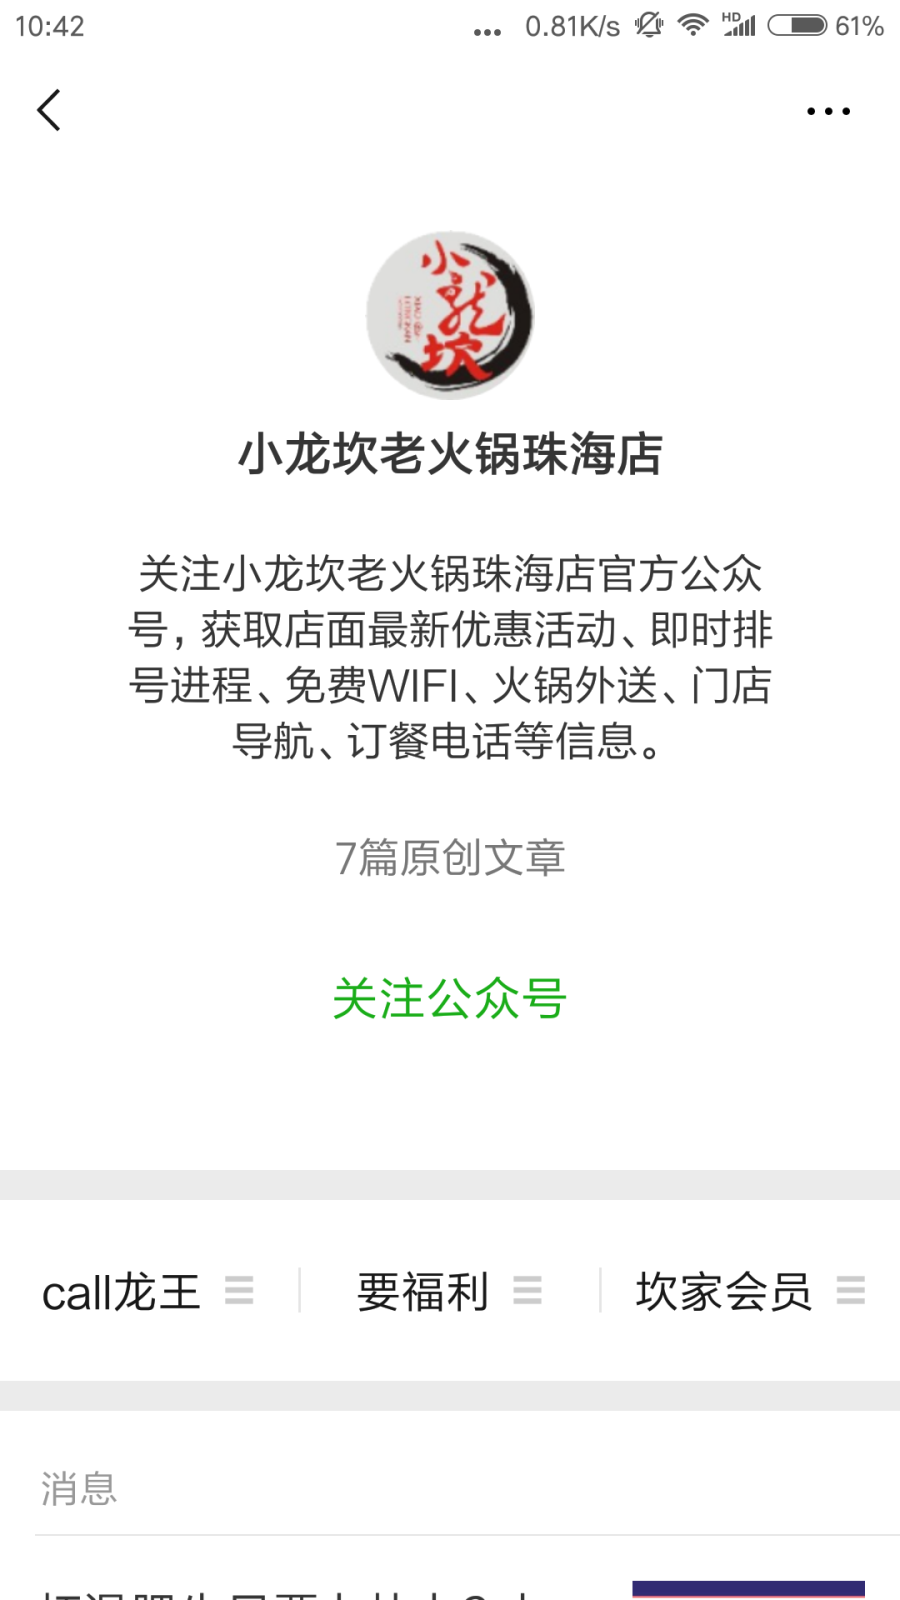 Screenshot_2018-08-27-10-42-54-189_com.tencent.mm.png